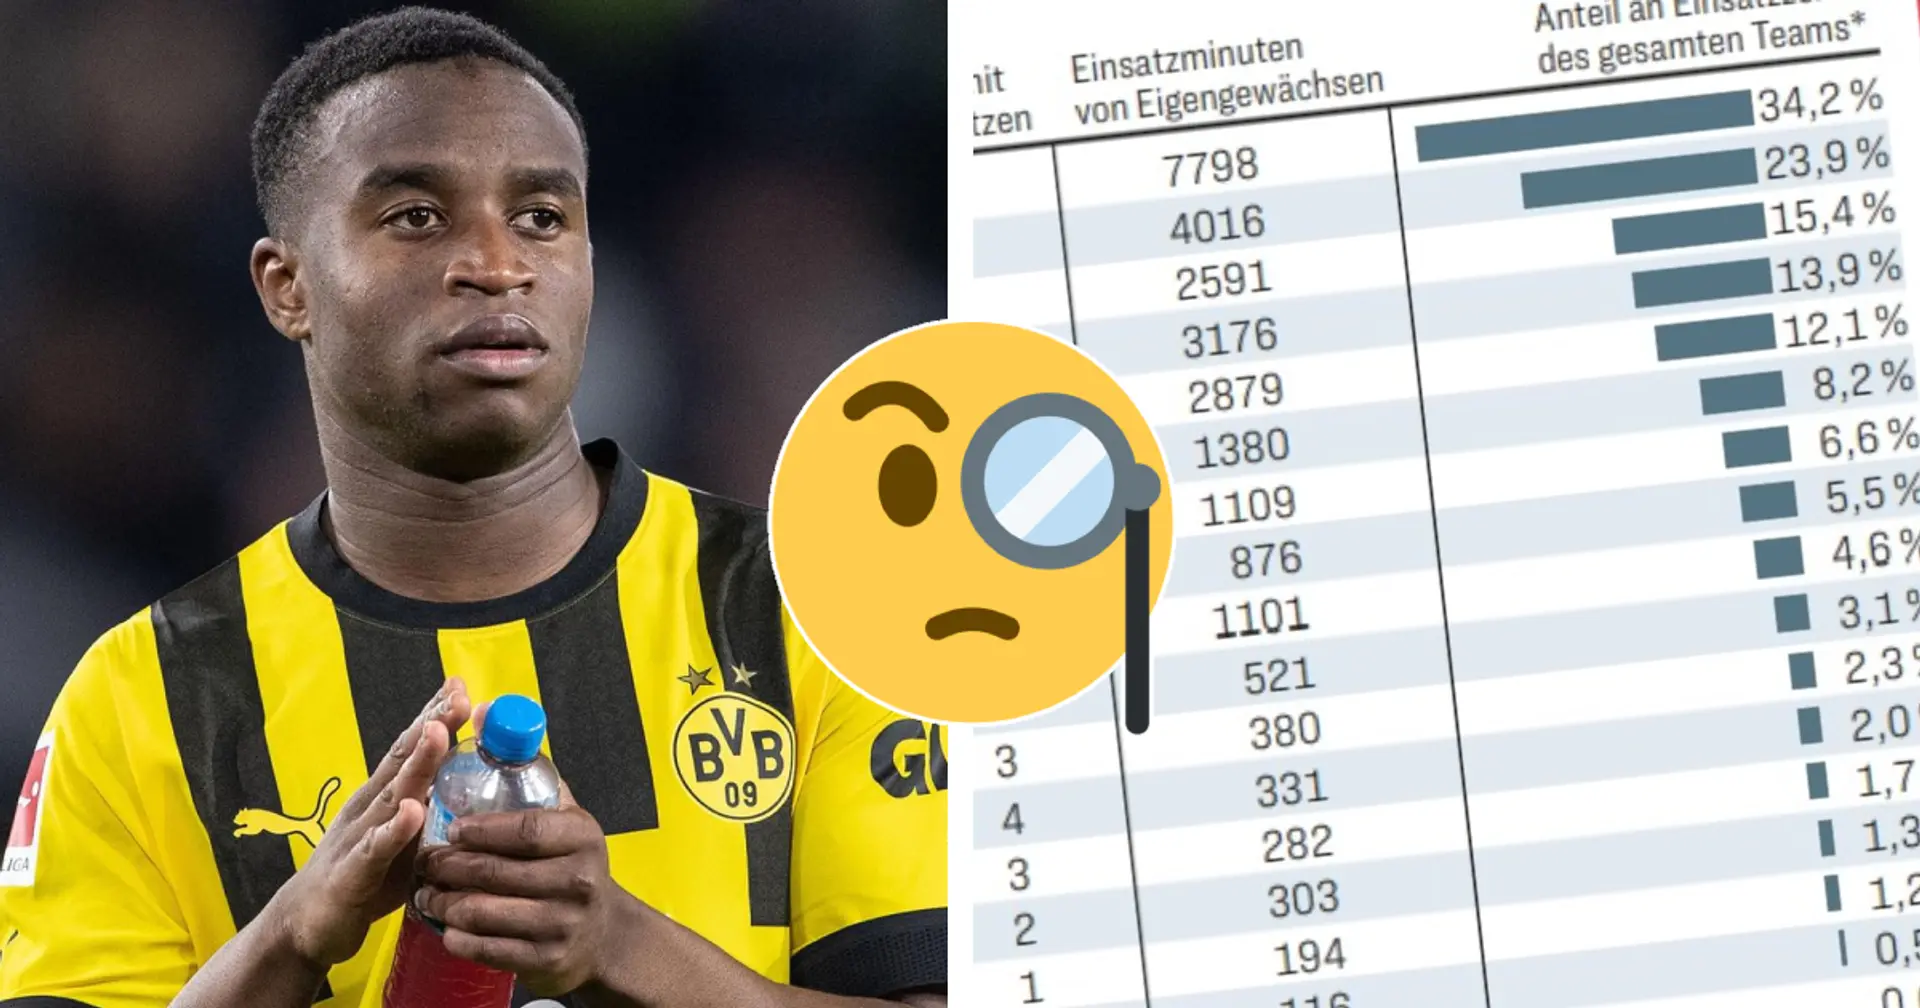 BuLi-Klubs mit größtem Anteil der Eigengewächse an Einsatzzeit des Teams - wo steht der BVB?